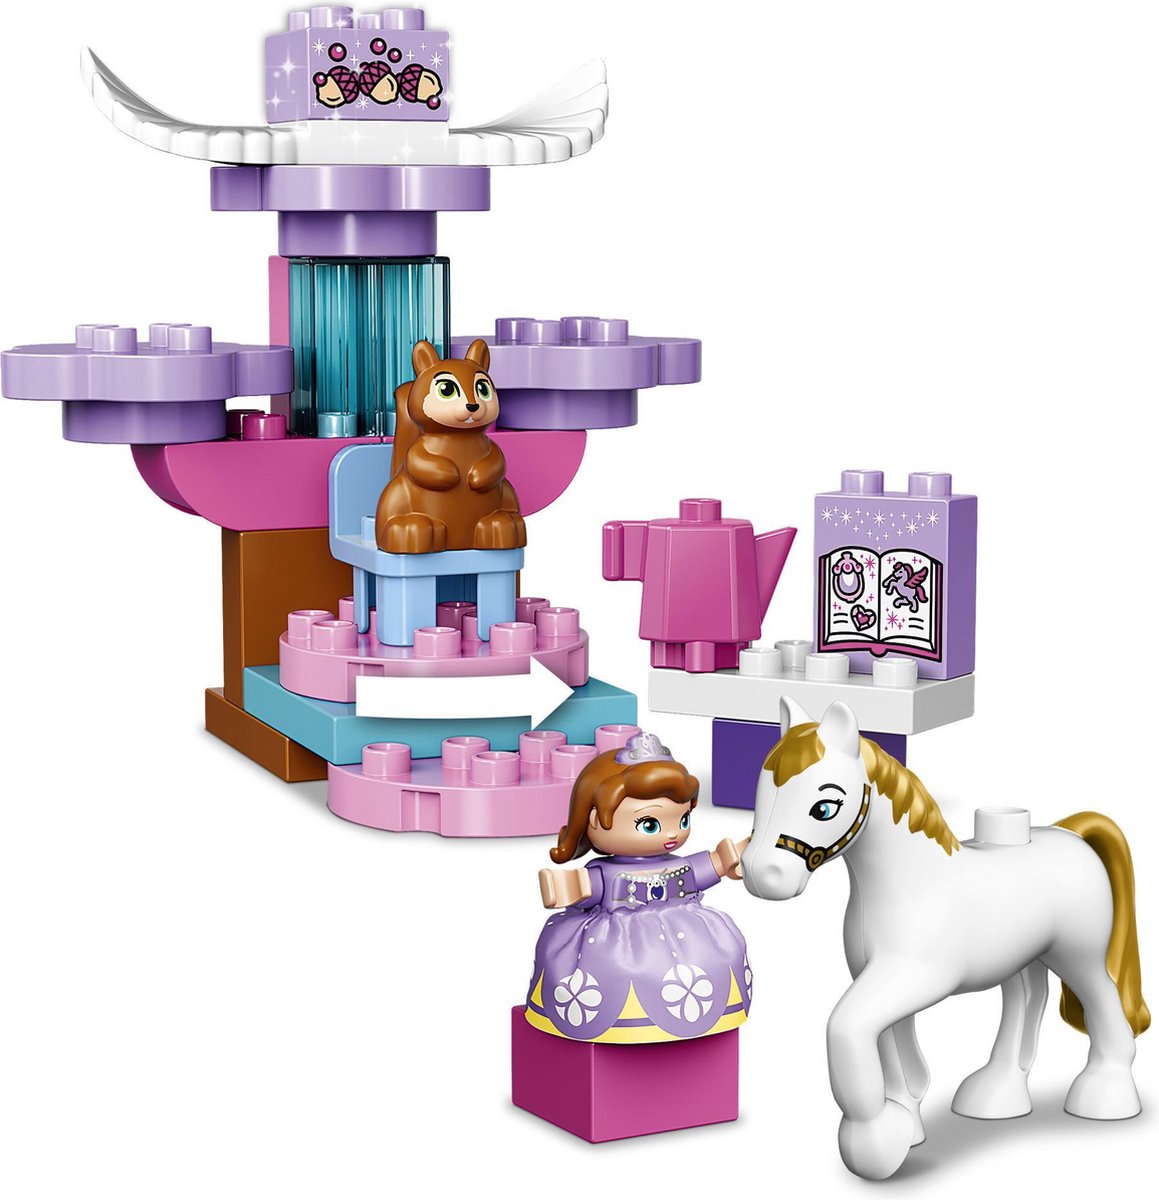 LEGO DUPLO Sofia het Prinsesje Magische Koets - 10822 | bol.com